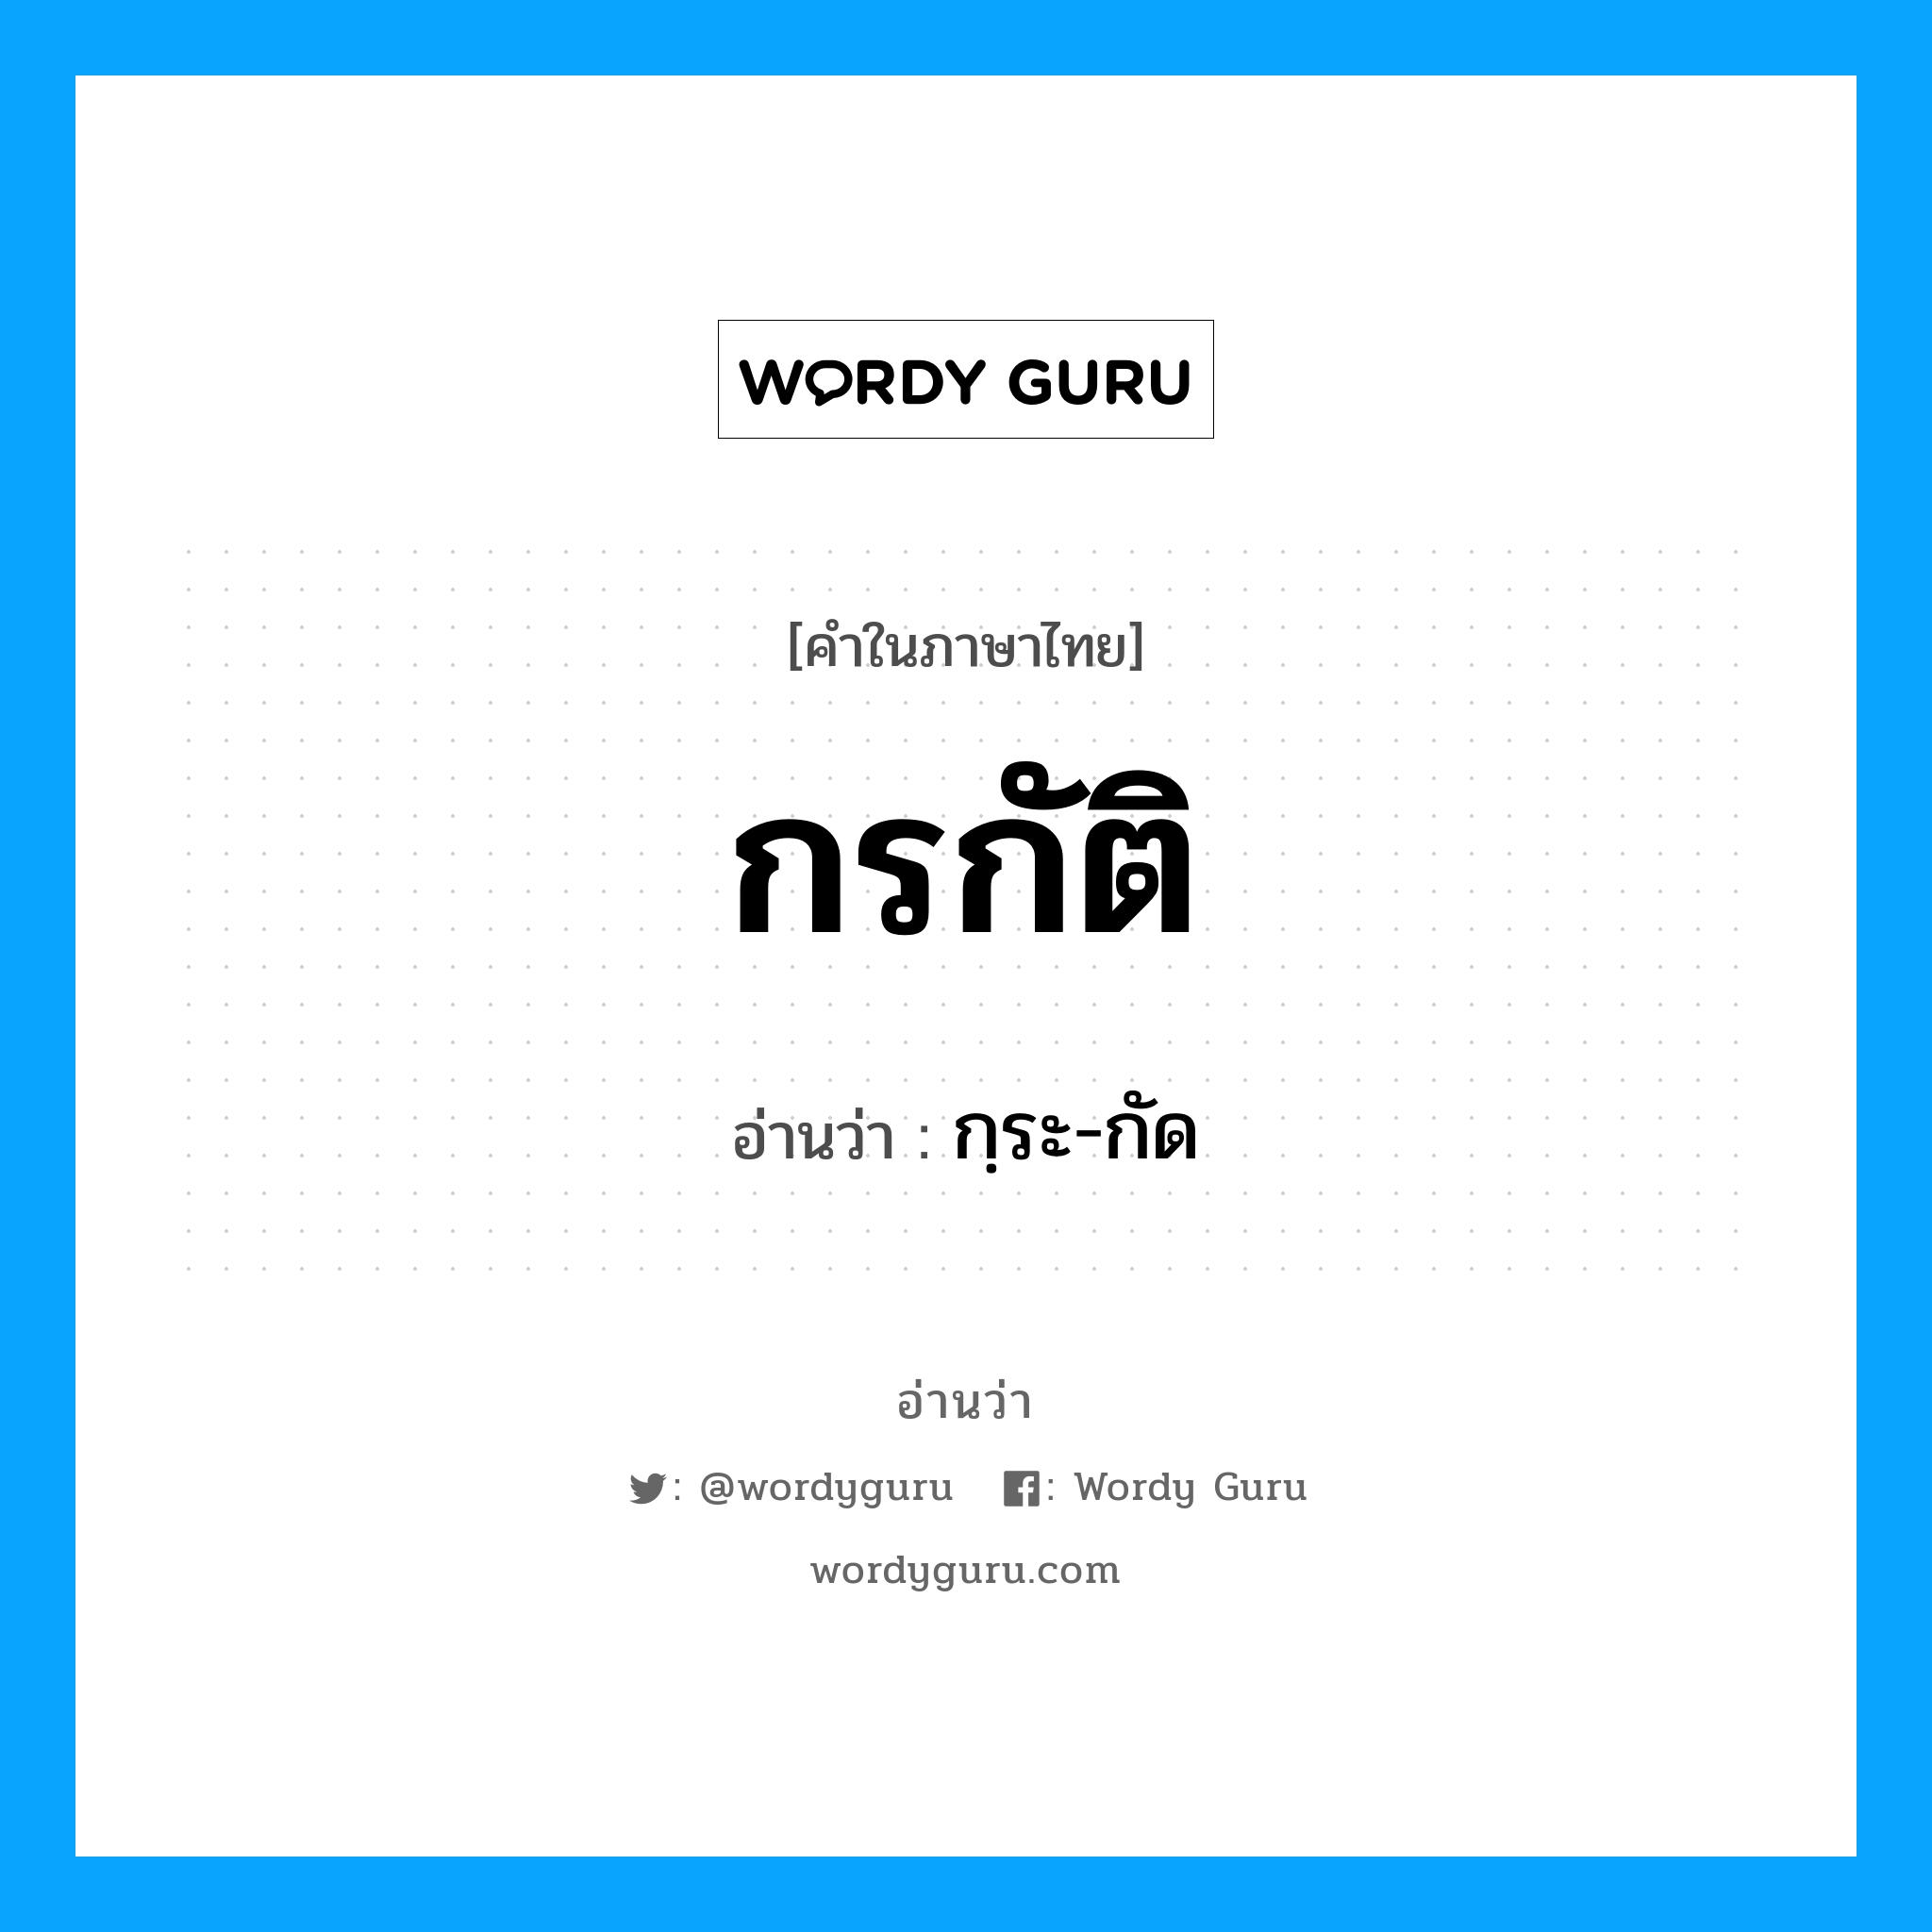 กฺระ-กัด เป็นคำอ่านของคำไหน?, คำในภาษาไทย กฺระ-กัด อ่านว่า กรกัติ